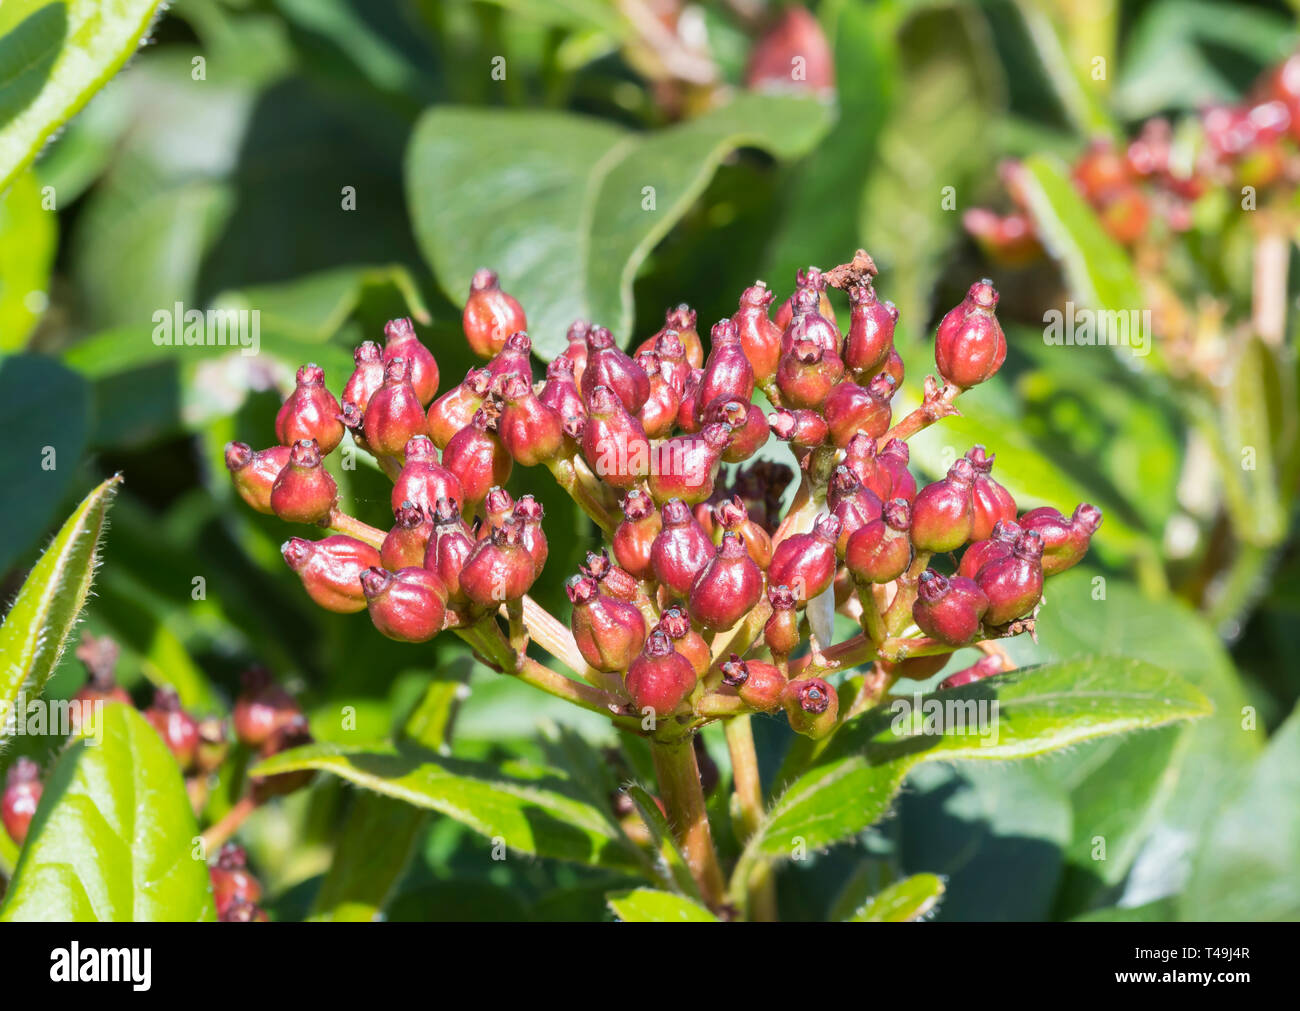 Gros plan macro rouge de boutons de fleurs de Viburnum tinus Viburnum (laurustinus laurustinus commun), avant que les fleurs apparaissent au printemps dans le West Sussex, Royaume-Uni. Banque D'Images